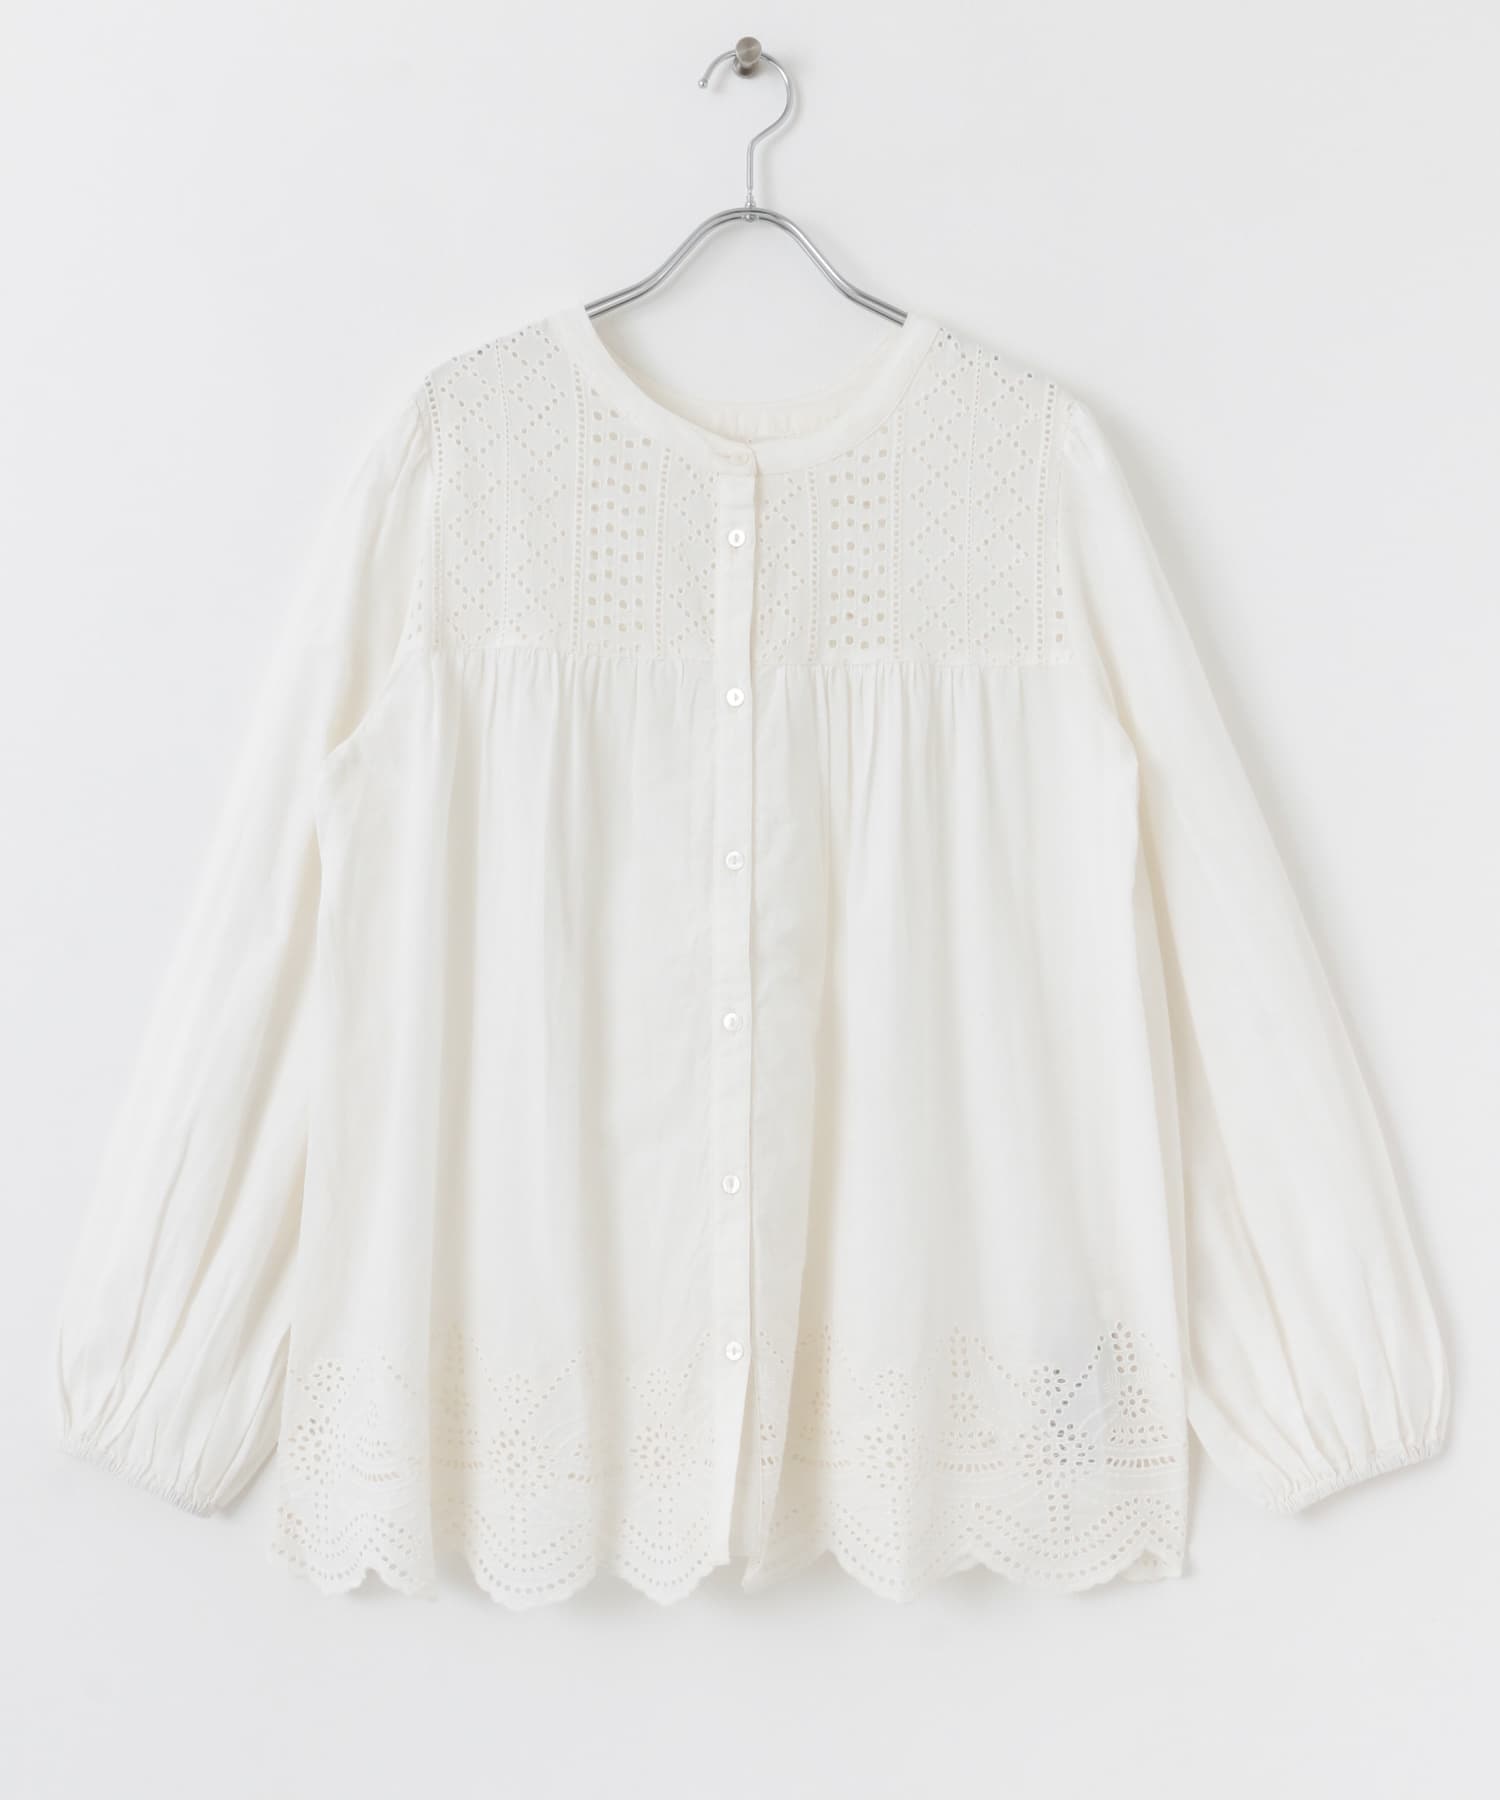 下襬扇貝花邊棉質蕾絲罩衫(米色-FREE-OFF WHITE)